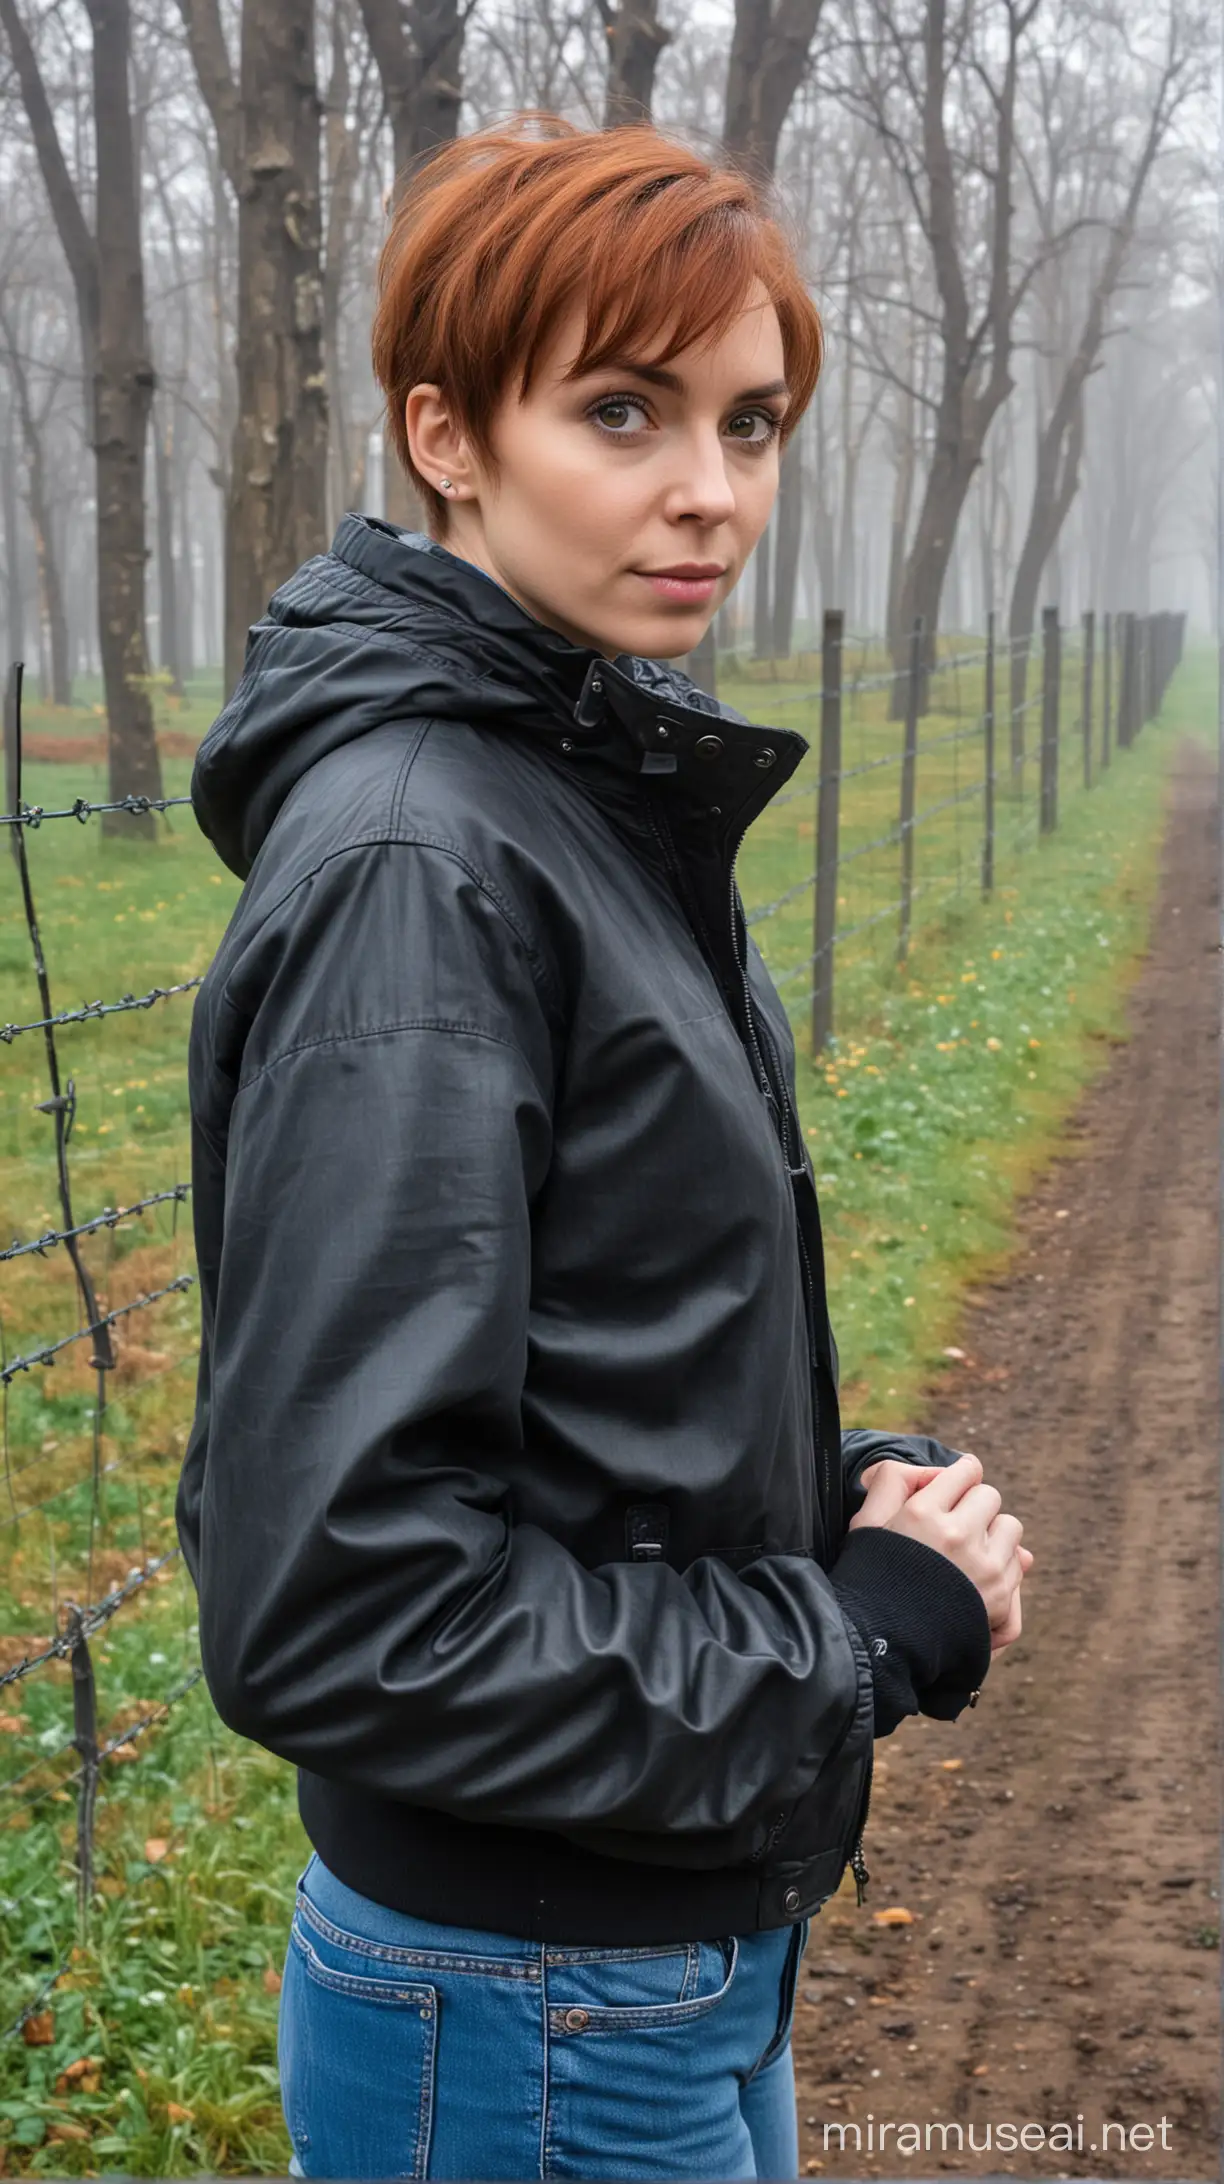 туманное апрельское утро в Ленинградской области, монастырская ограда, за ней - подворье монастыря, снаружи у ограды стоит женщина с каштановыми волосами и серыми глазами со стрижкой под "пикси" в джинсах и черной куртке-ветровке